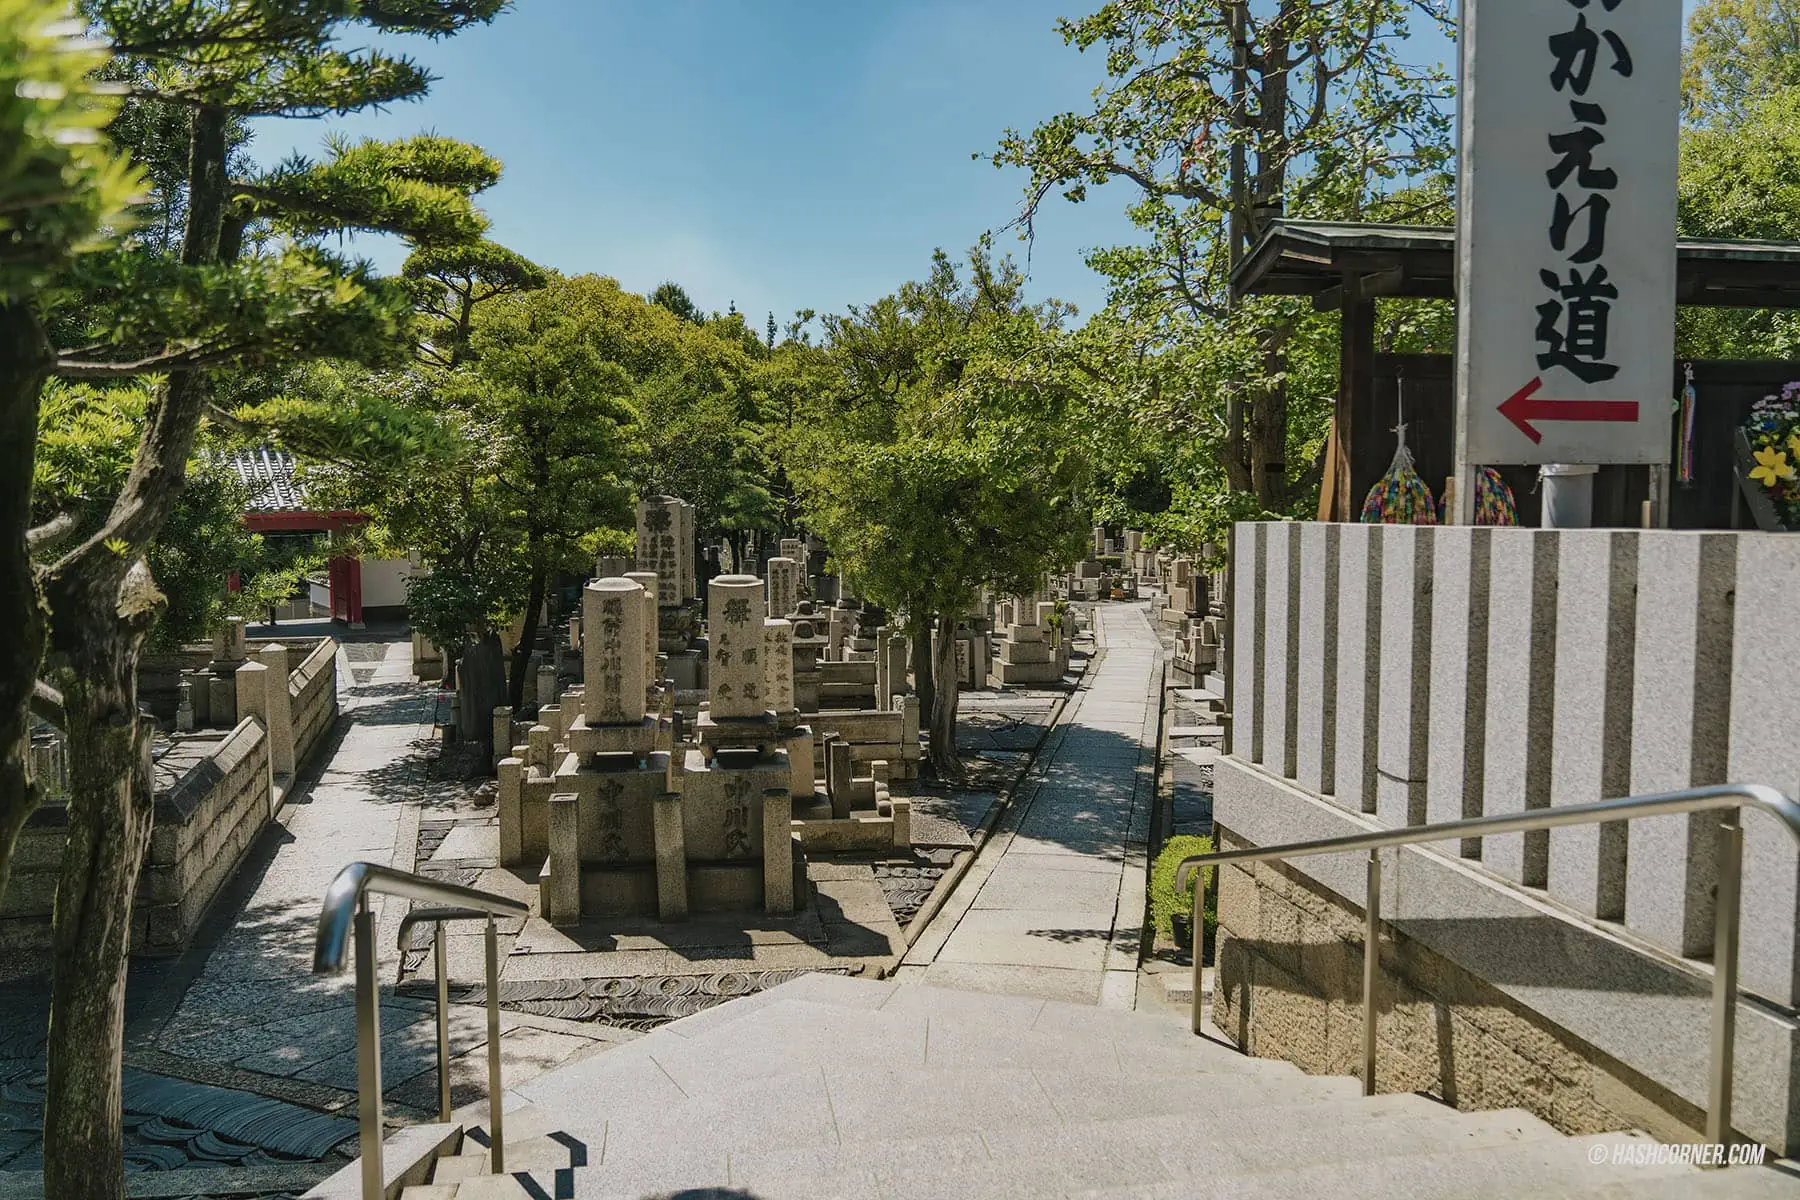 รีวิว วัดอิชชินจิ (Isshinji Temple) x โอซาก้า วัดที่สร้างพระพุทธรูปจากเถ้ากระดูก